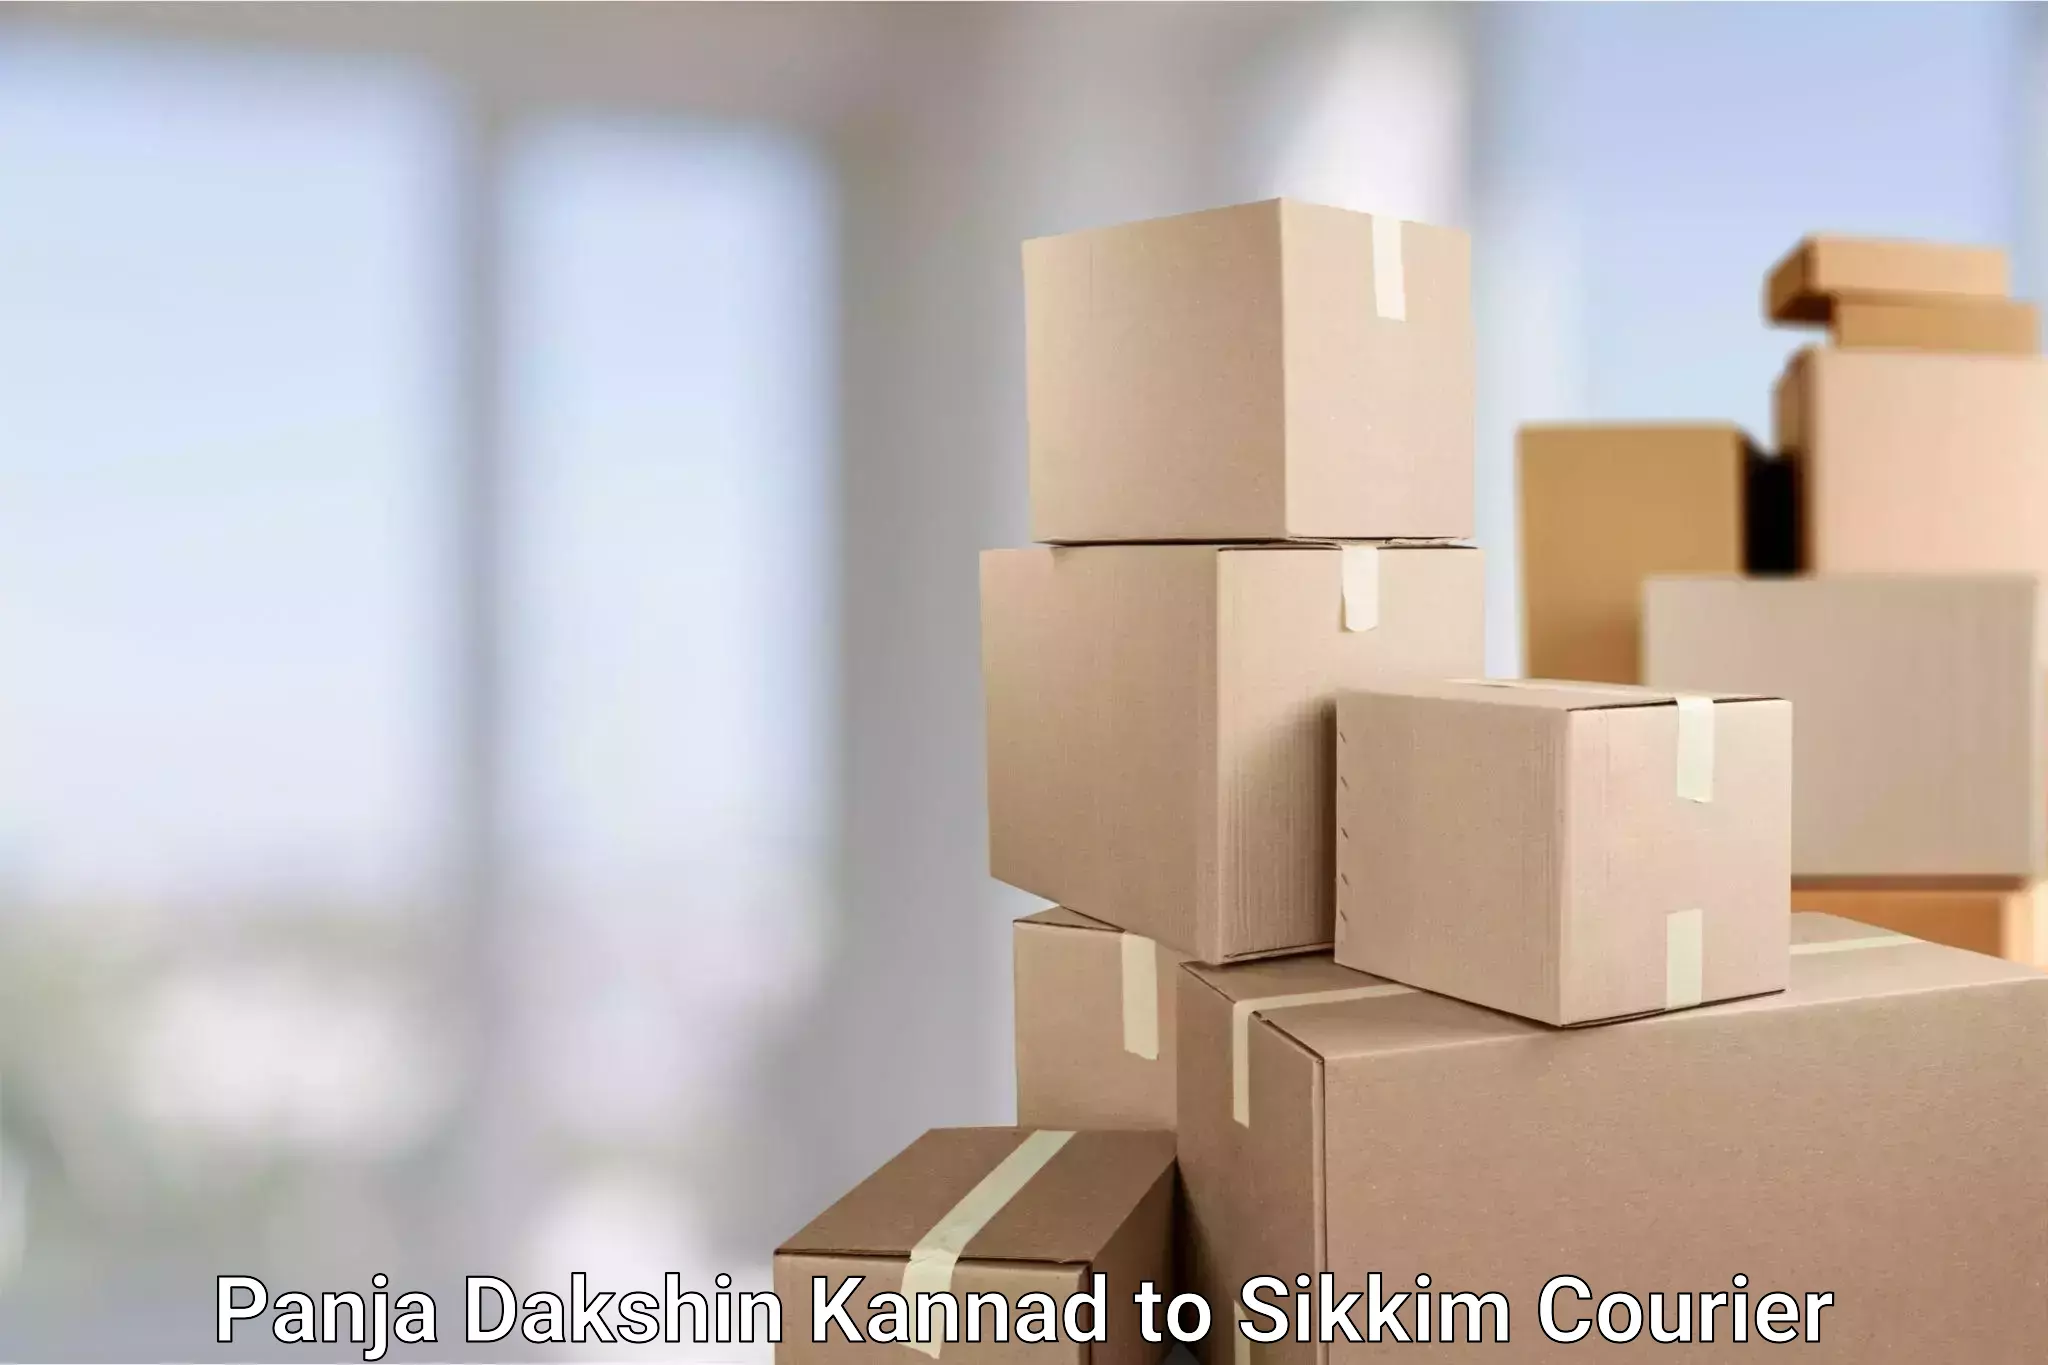 Sustainable courier practices Panja Dakshin Kannad to Sikkim